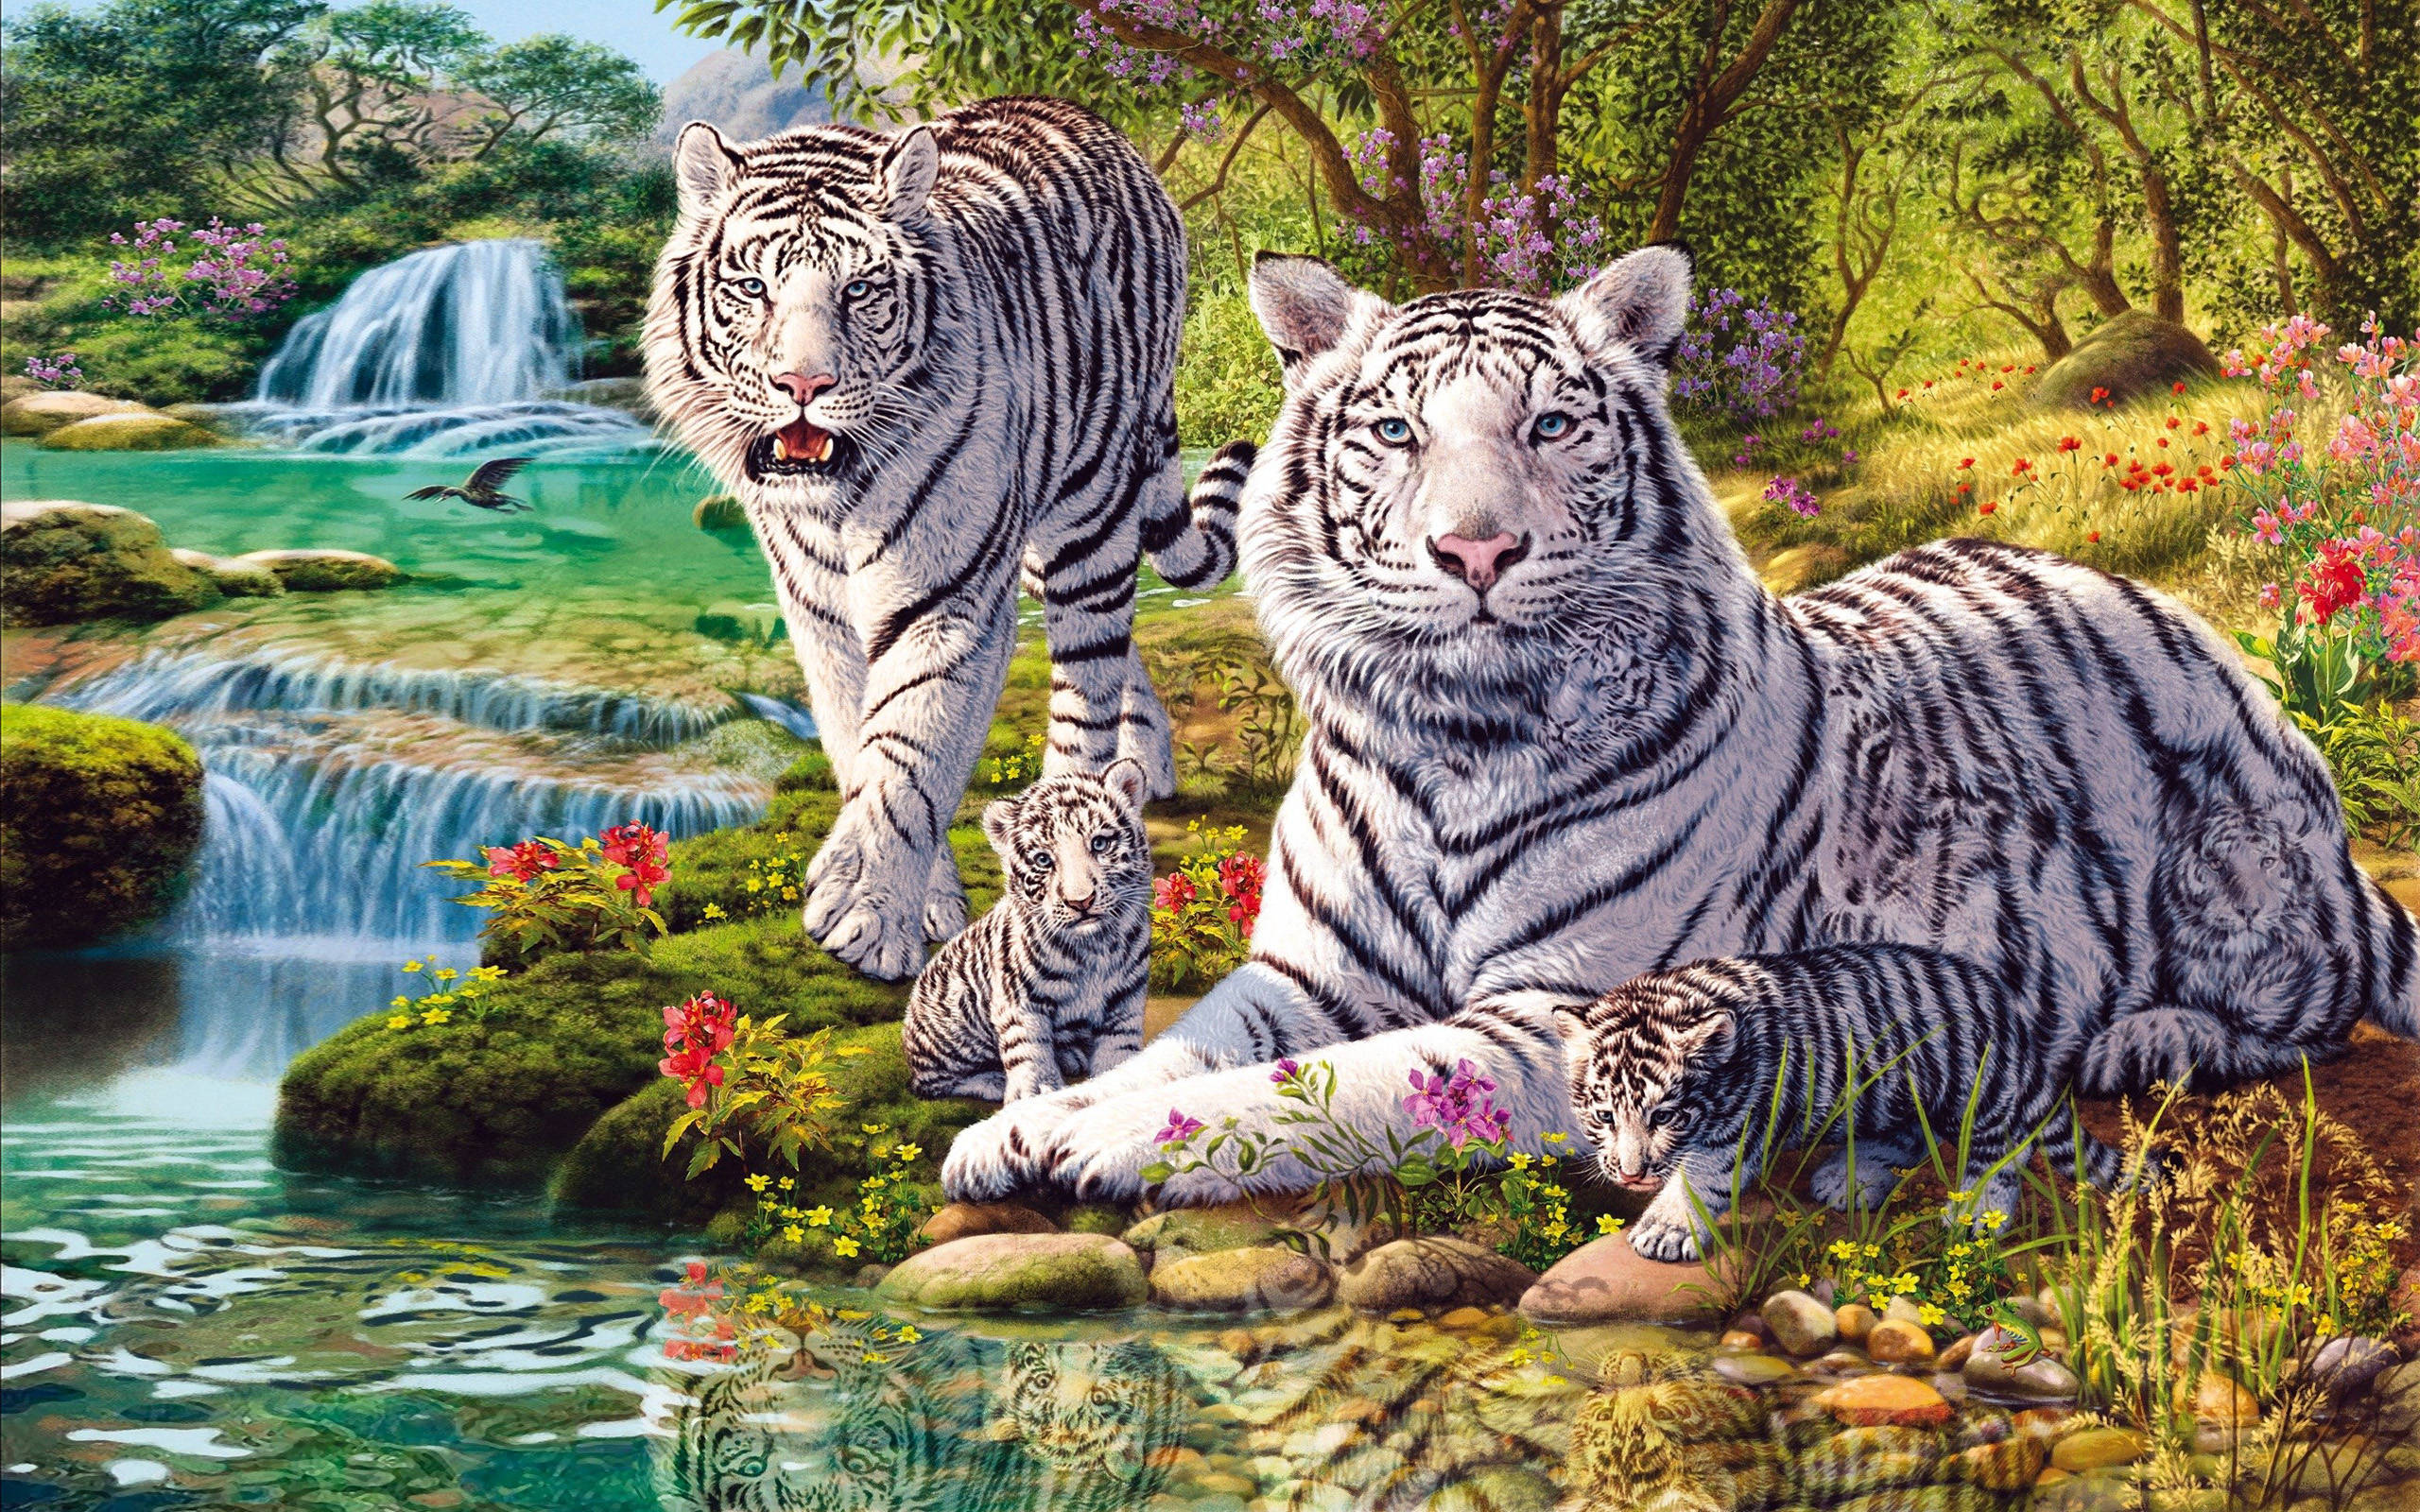 心理测试:图片中你找到了几只老虎,测你的思维灵活吗?